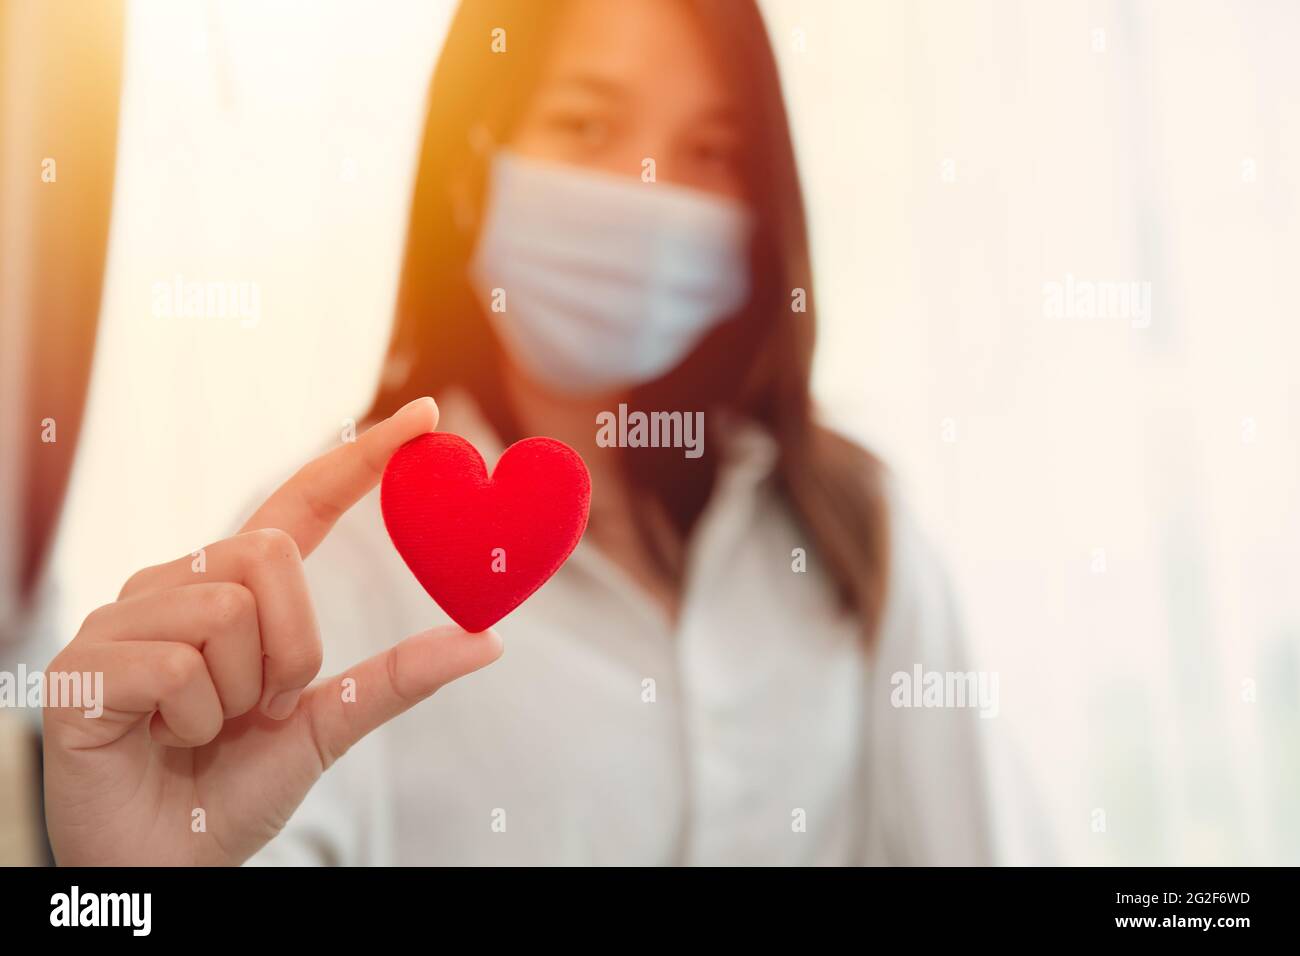 Mädchen teen trägt Gesichtsmaske Hand hält rote Herz für die Liebe Pflege zusammen gesund bleiben und schützen Covid Corona Virus Verbreitung Konzept. Stockfoto